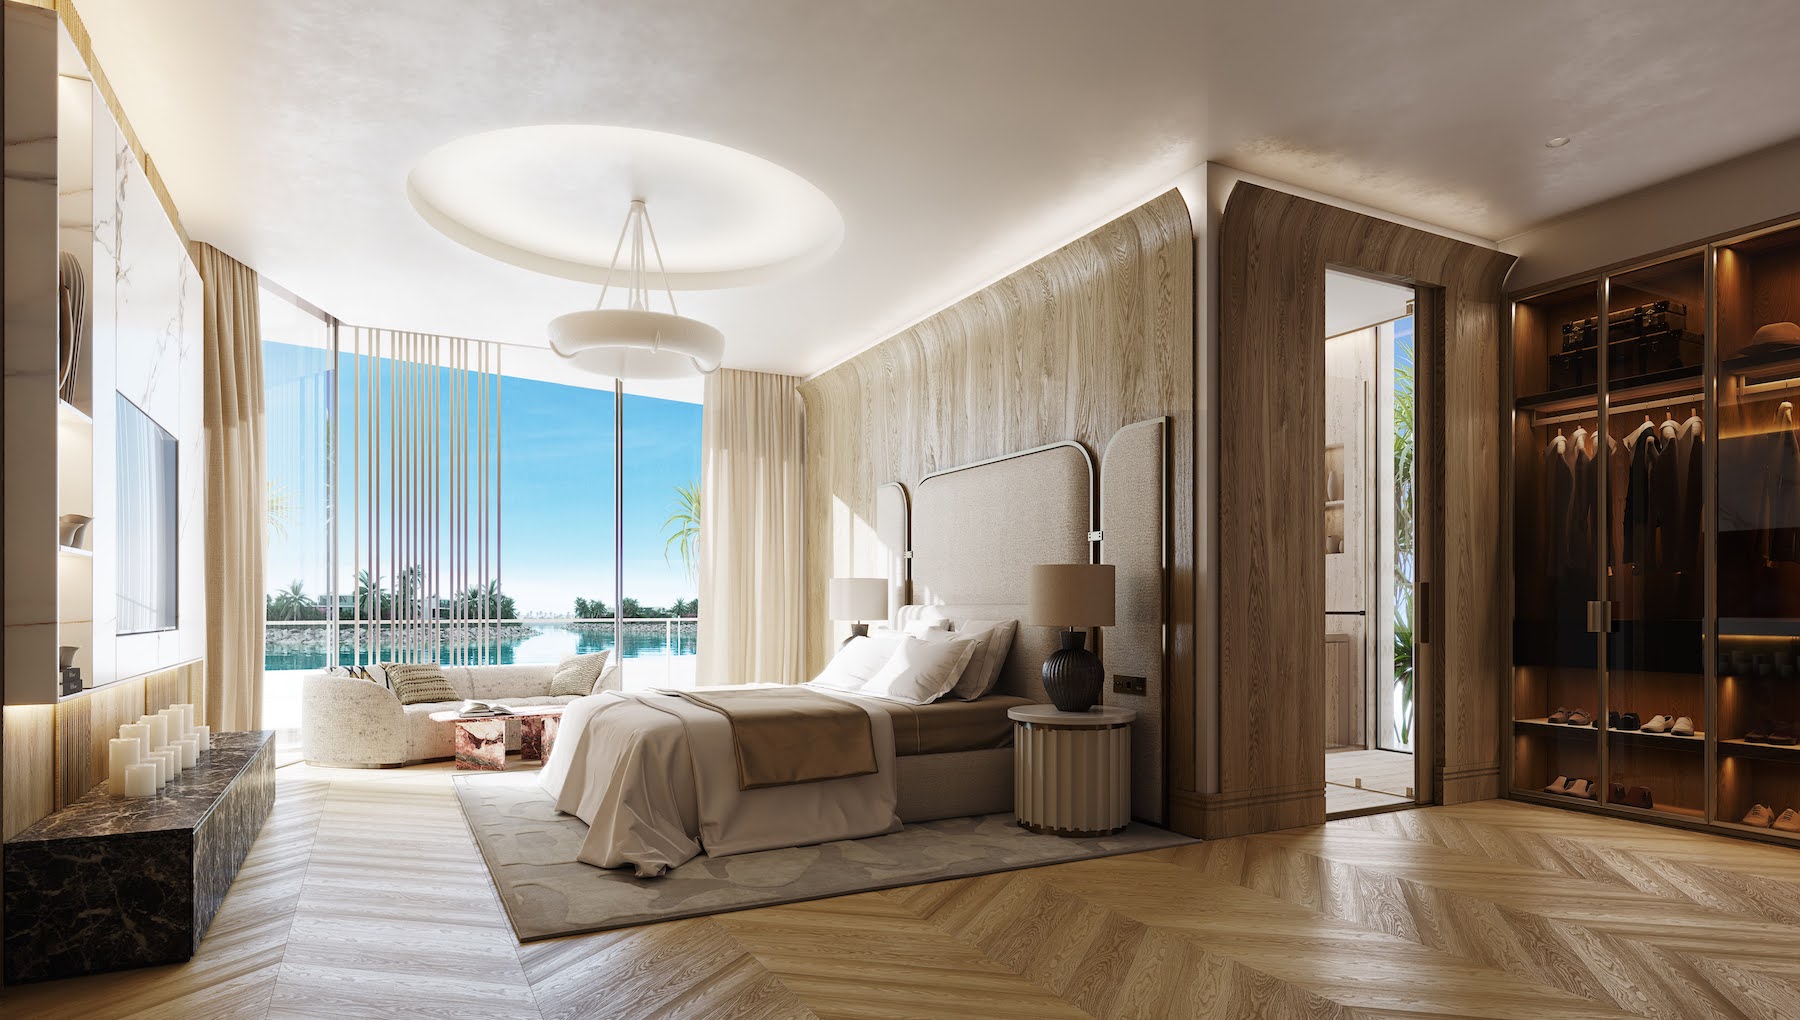 Bedroom in a private villa in Dubai interior designed by Bergman Design House in Effect Magazine